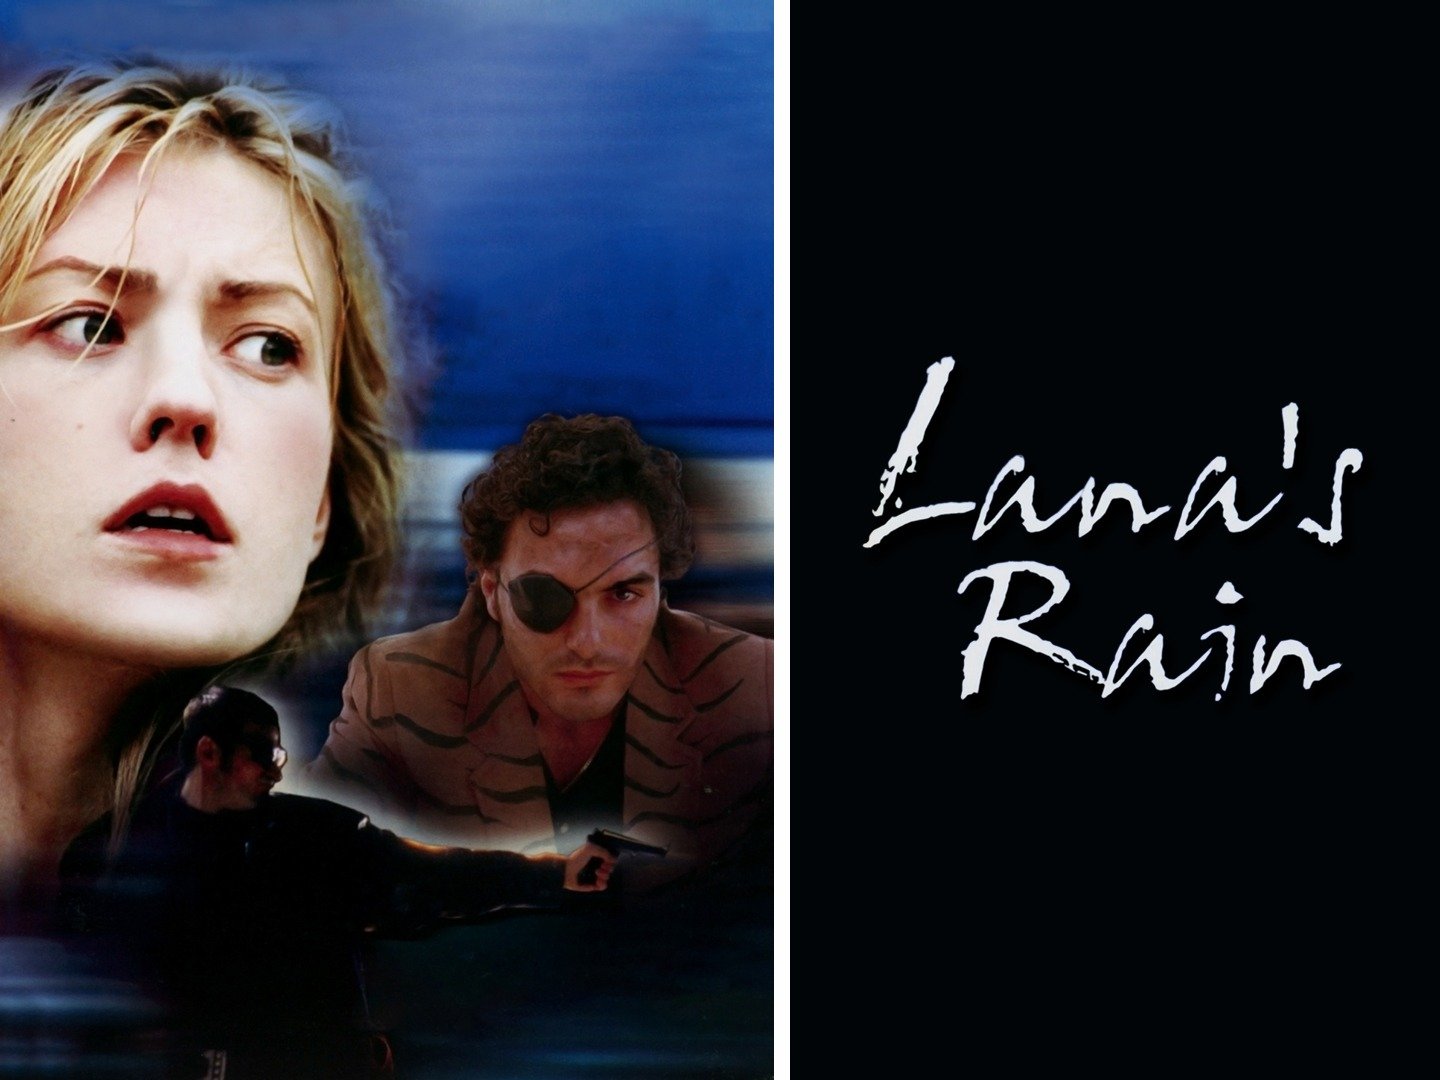 Lana rain real name